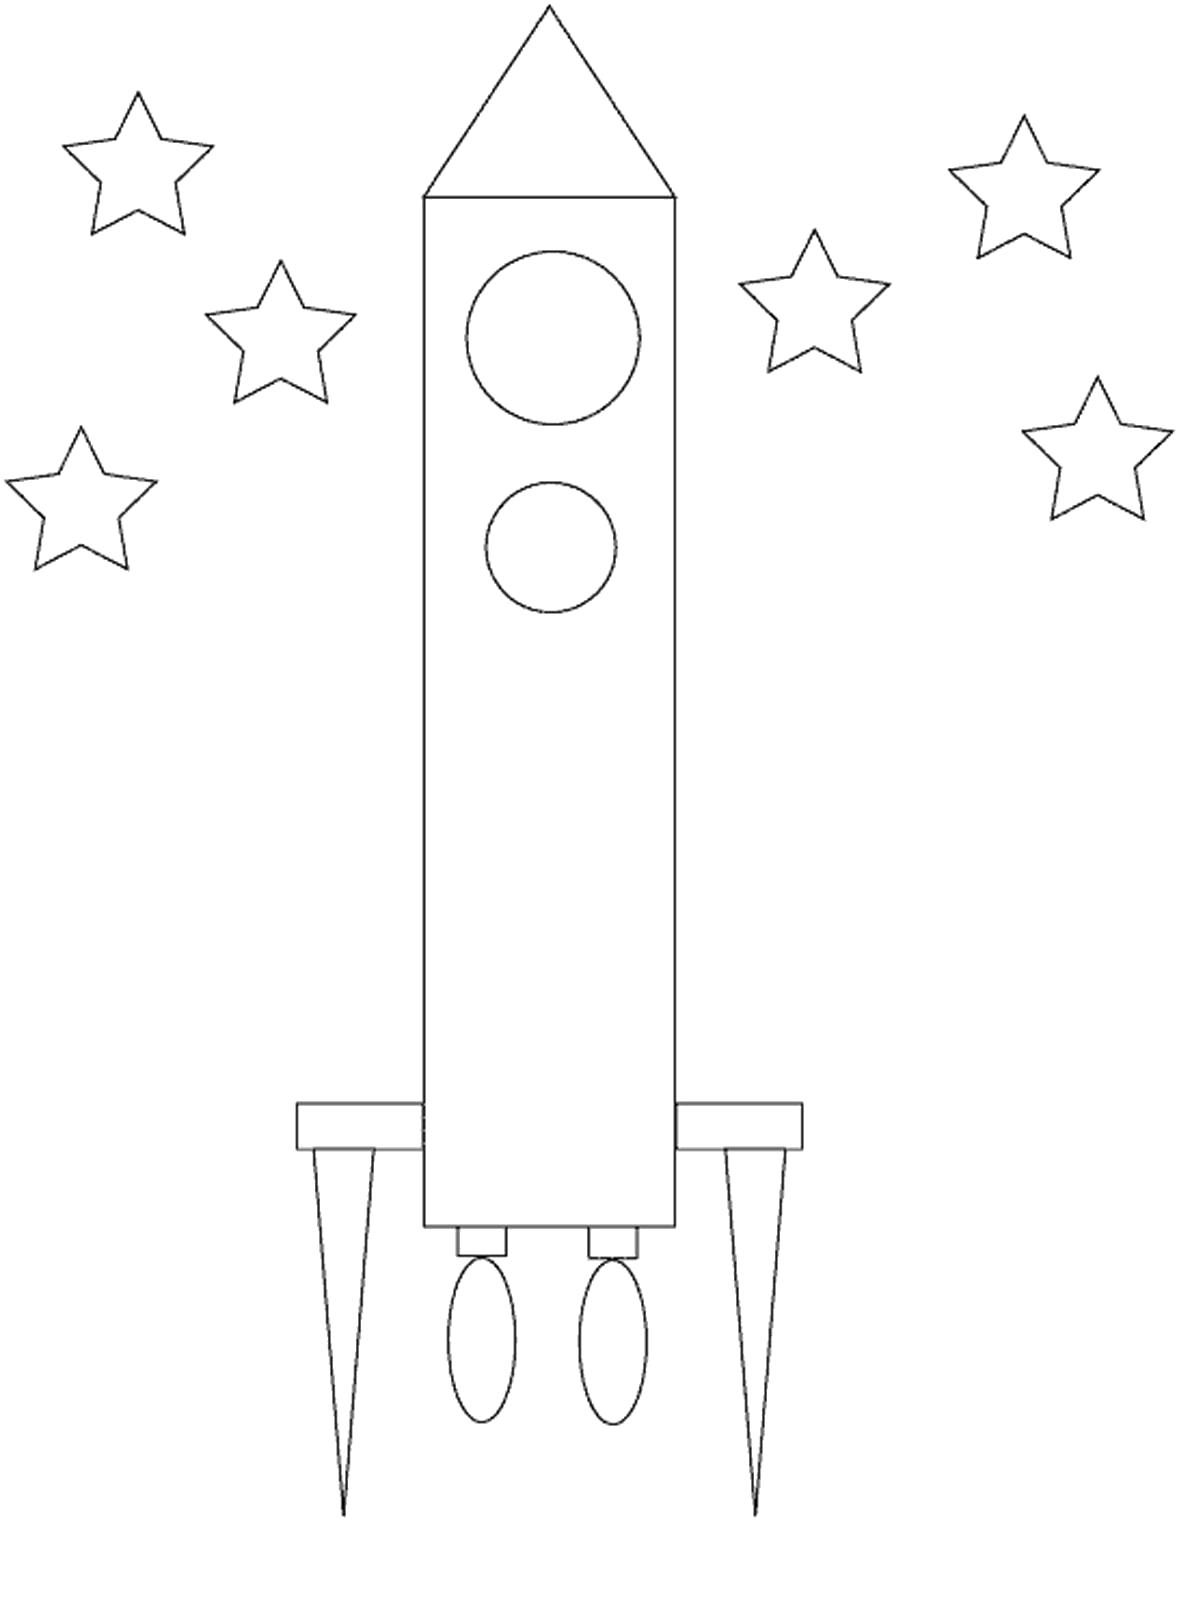 Раскраска ракета аппликация из бумаги. Скачать круг, звезда, треугольник.  Распечатать геометрические фигуры